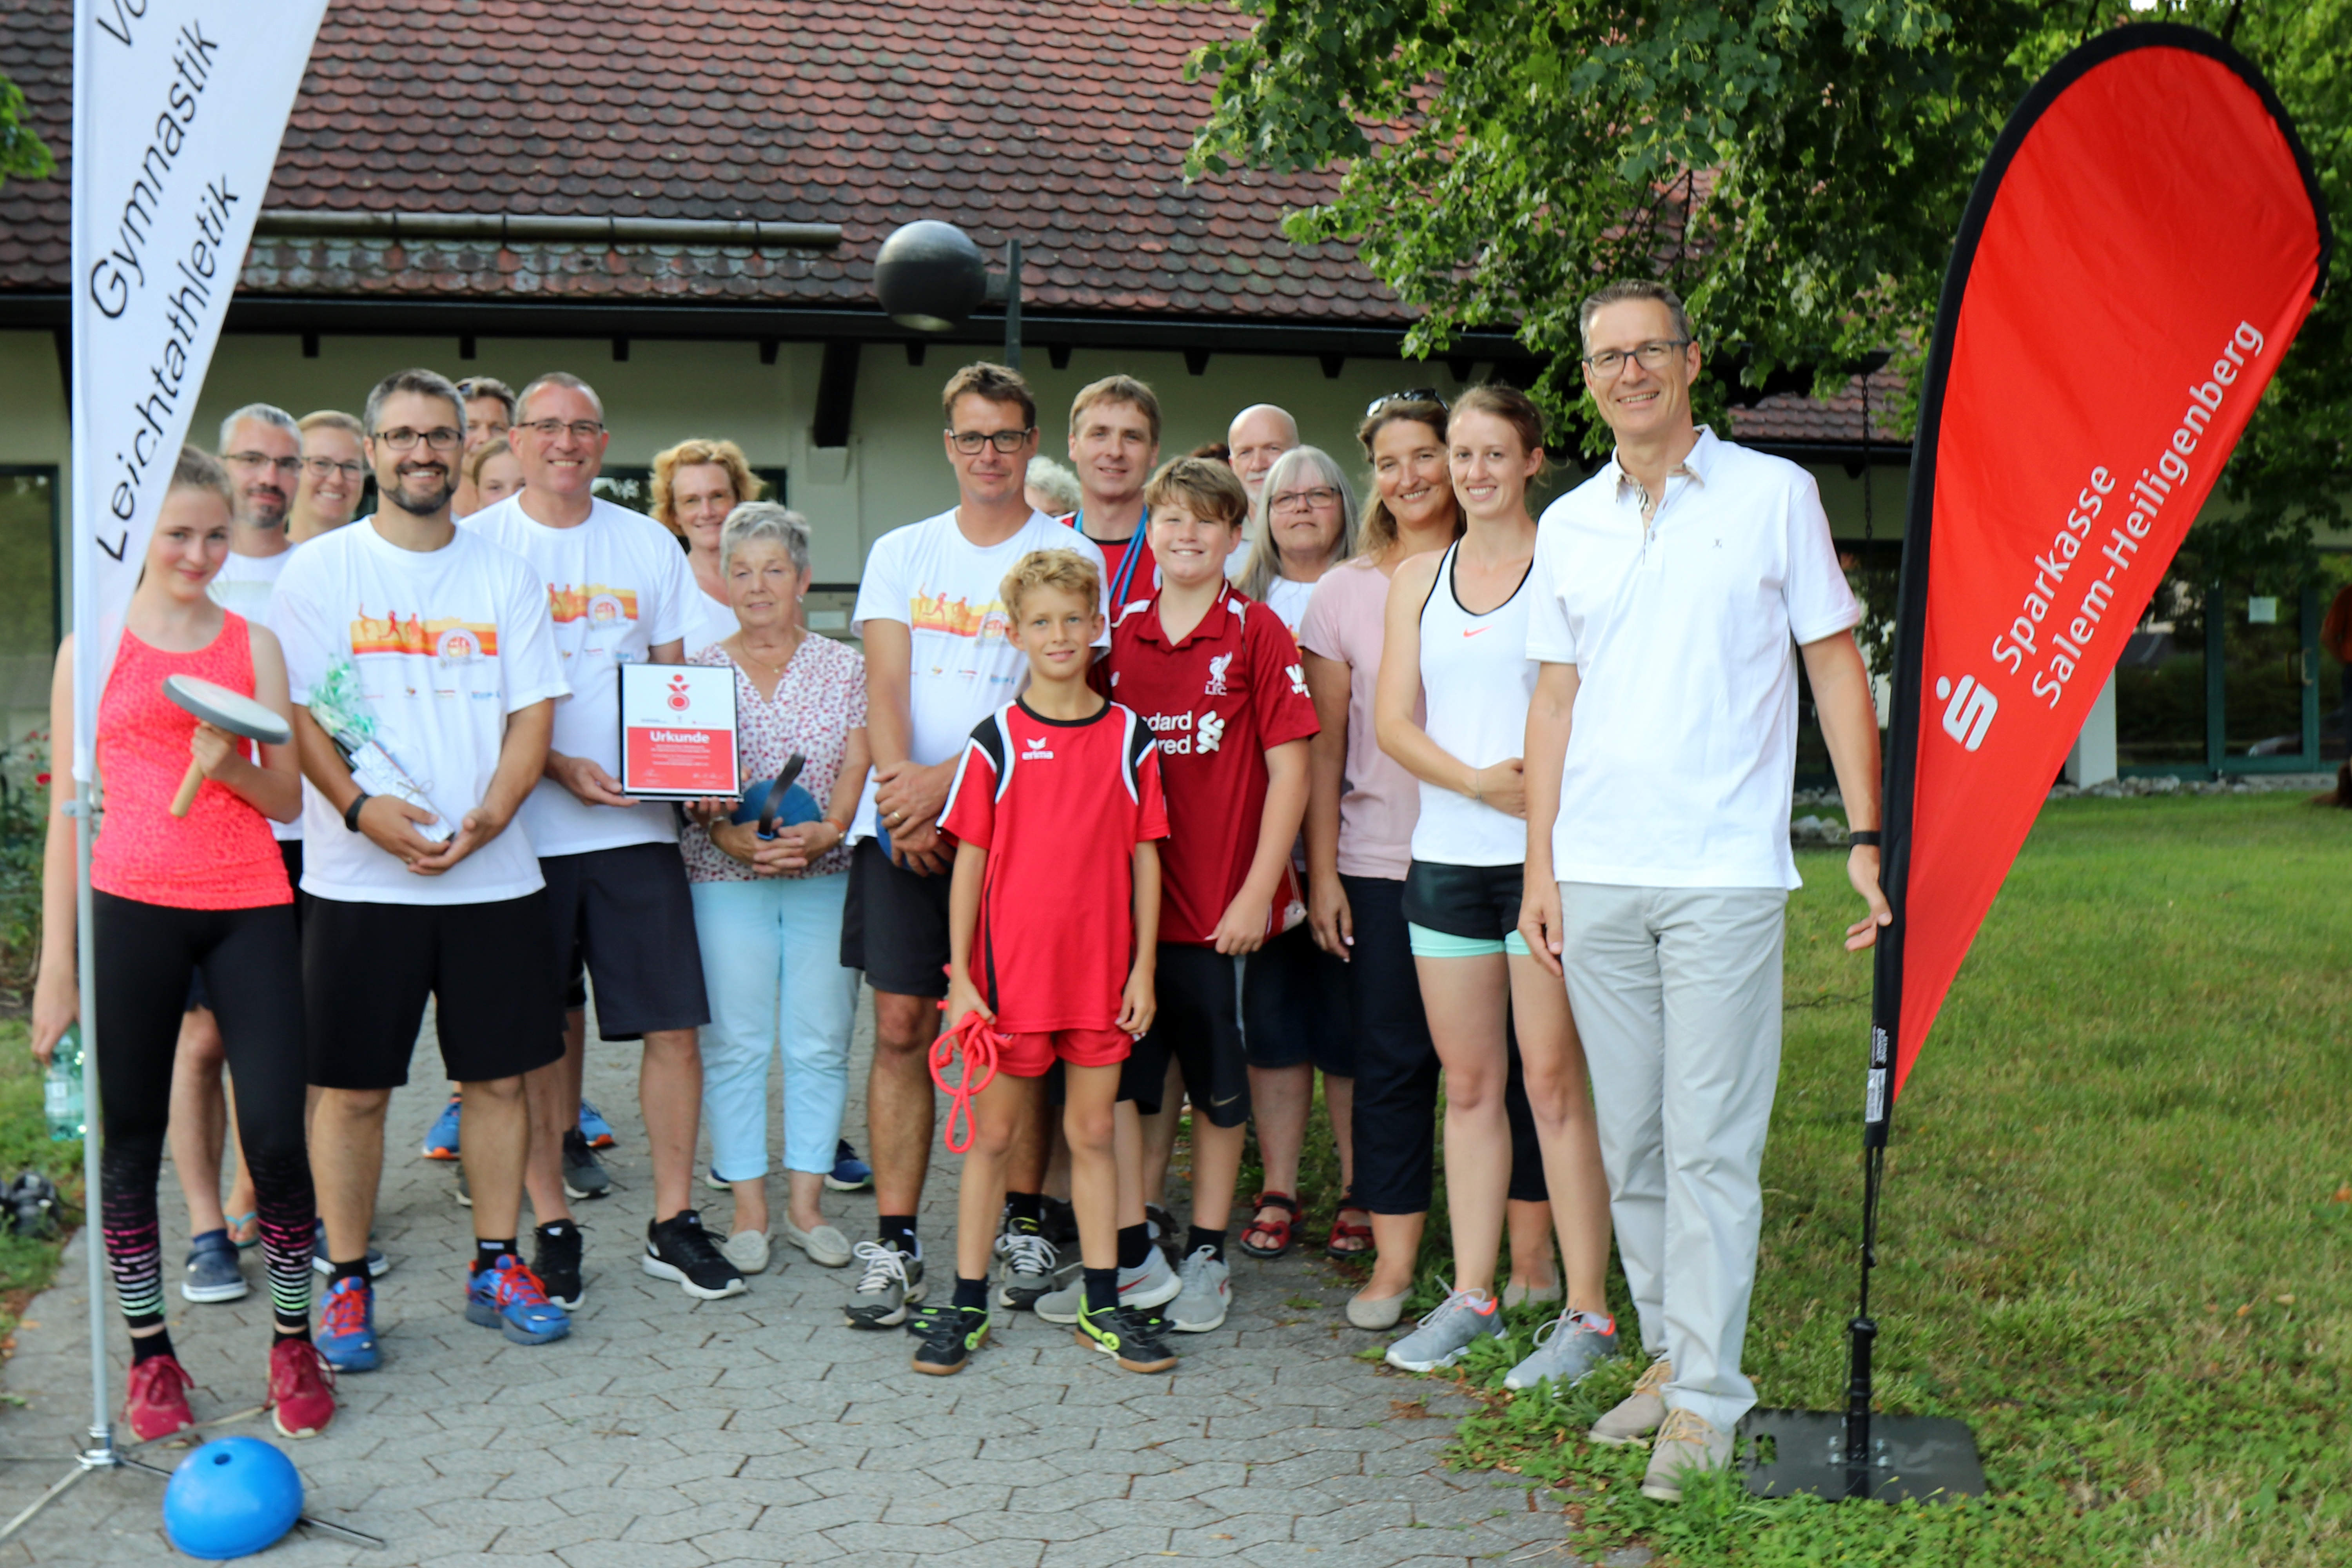 Turnverein Bermatingen erhält Förderpreis bei Sportabzeichen-Wettbewerb